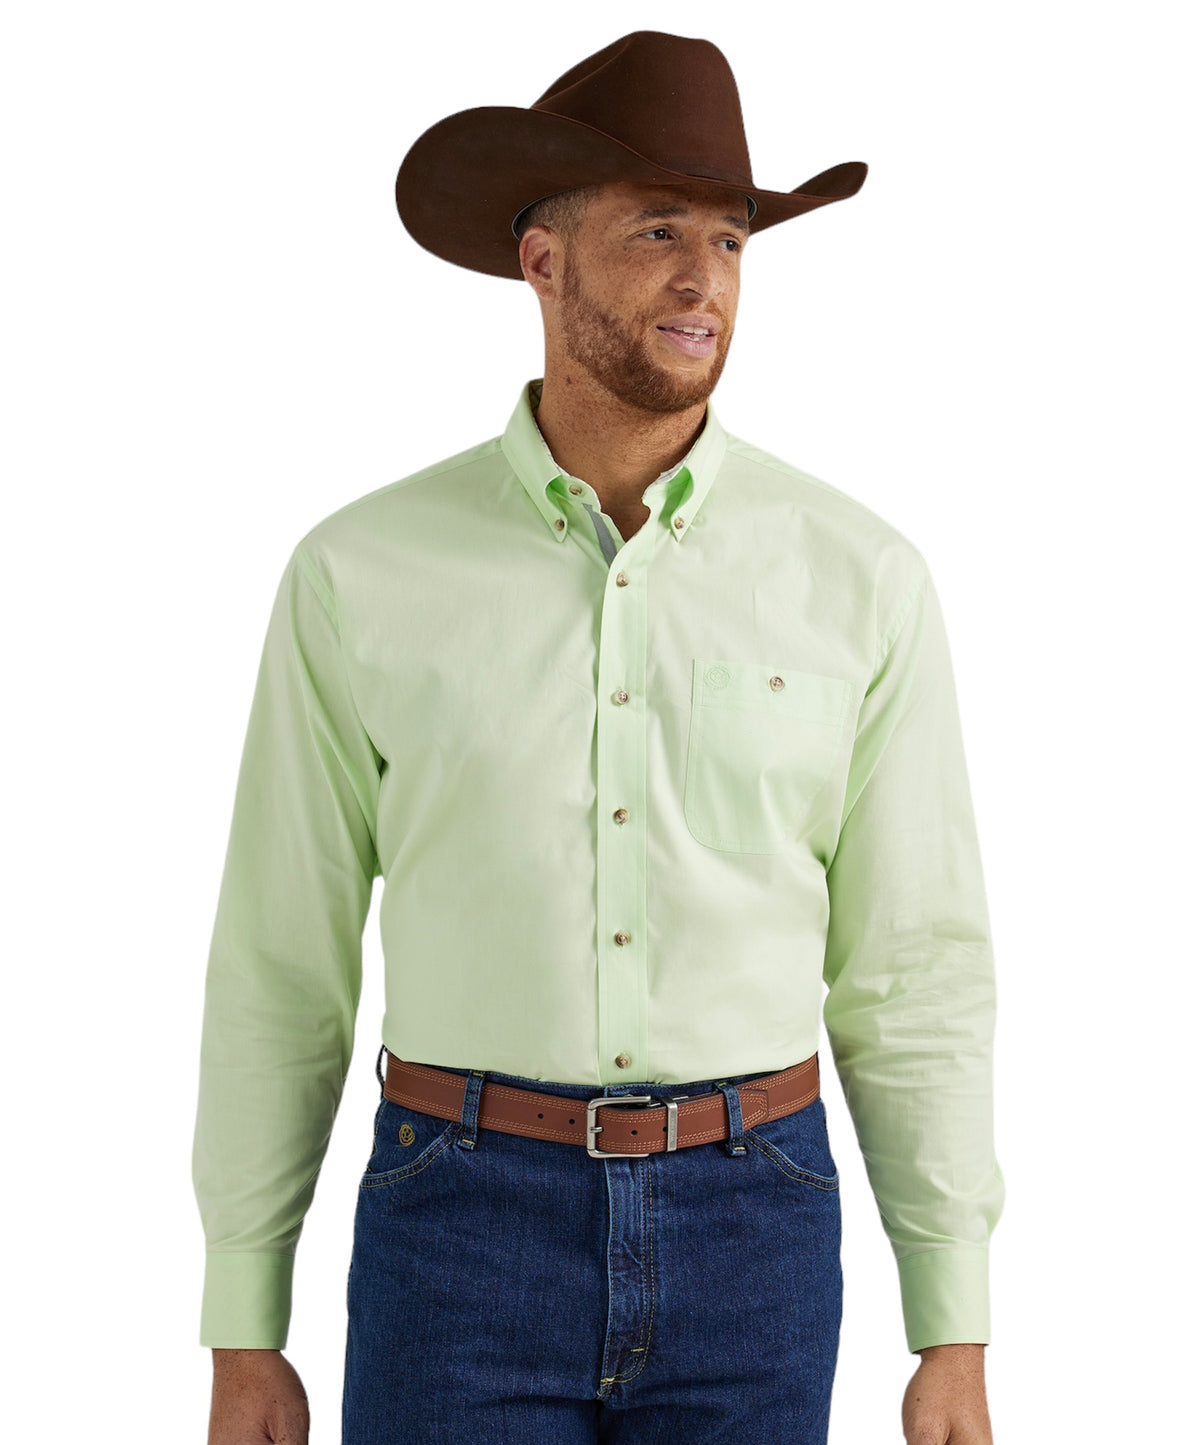 Men's Wrangler Solid Light Green Western Shirt